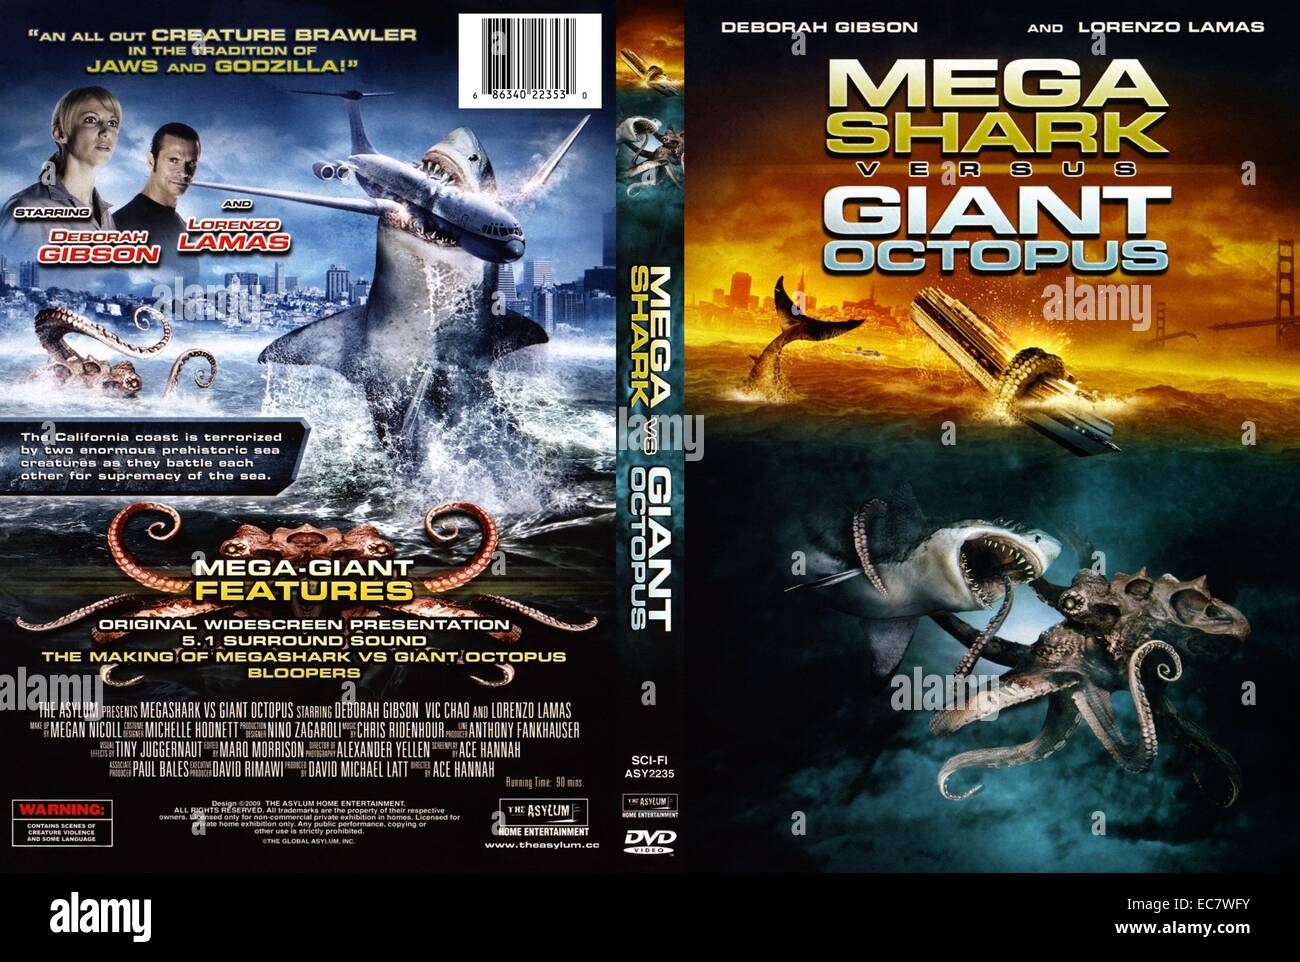 Mega Shark Versus Giant Octopus est un film de monstre par l'asile, 2009, parution aux États-Unis. réalisé par Ace Hannah et stars singer Deborah Gibson et l'acteur Lorenzo Lamas. Le film est à propos de la chasse pour deux monstres marins préhistoriques provoquant le chaos et le carnage en mer. Banque D'Images